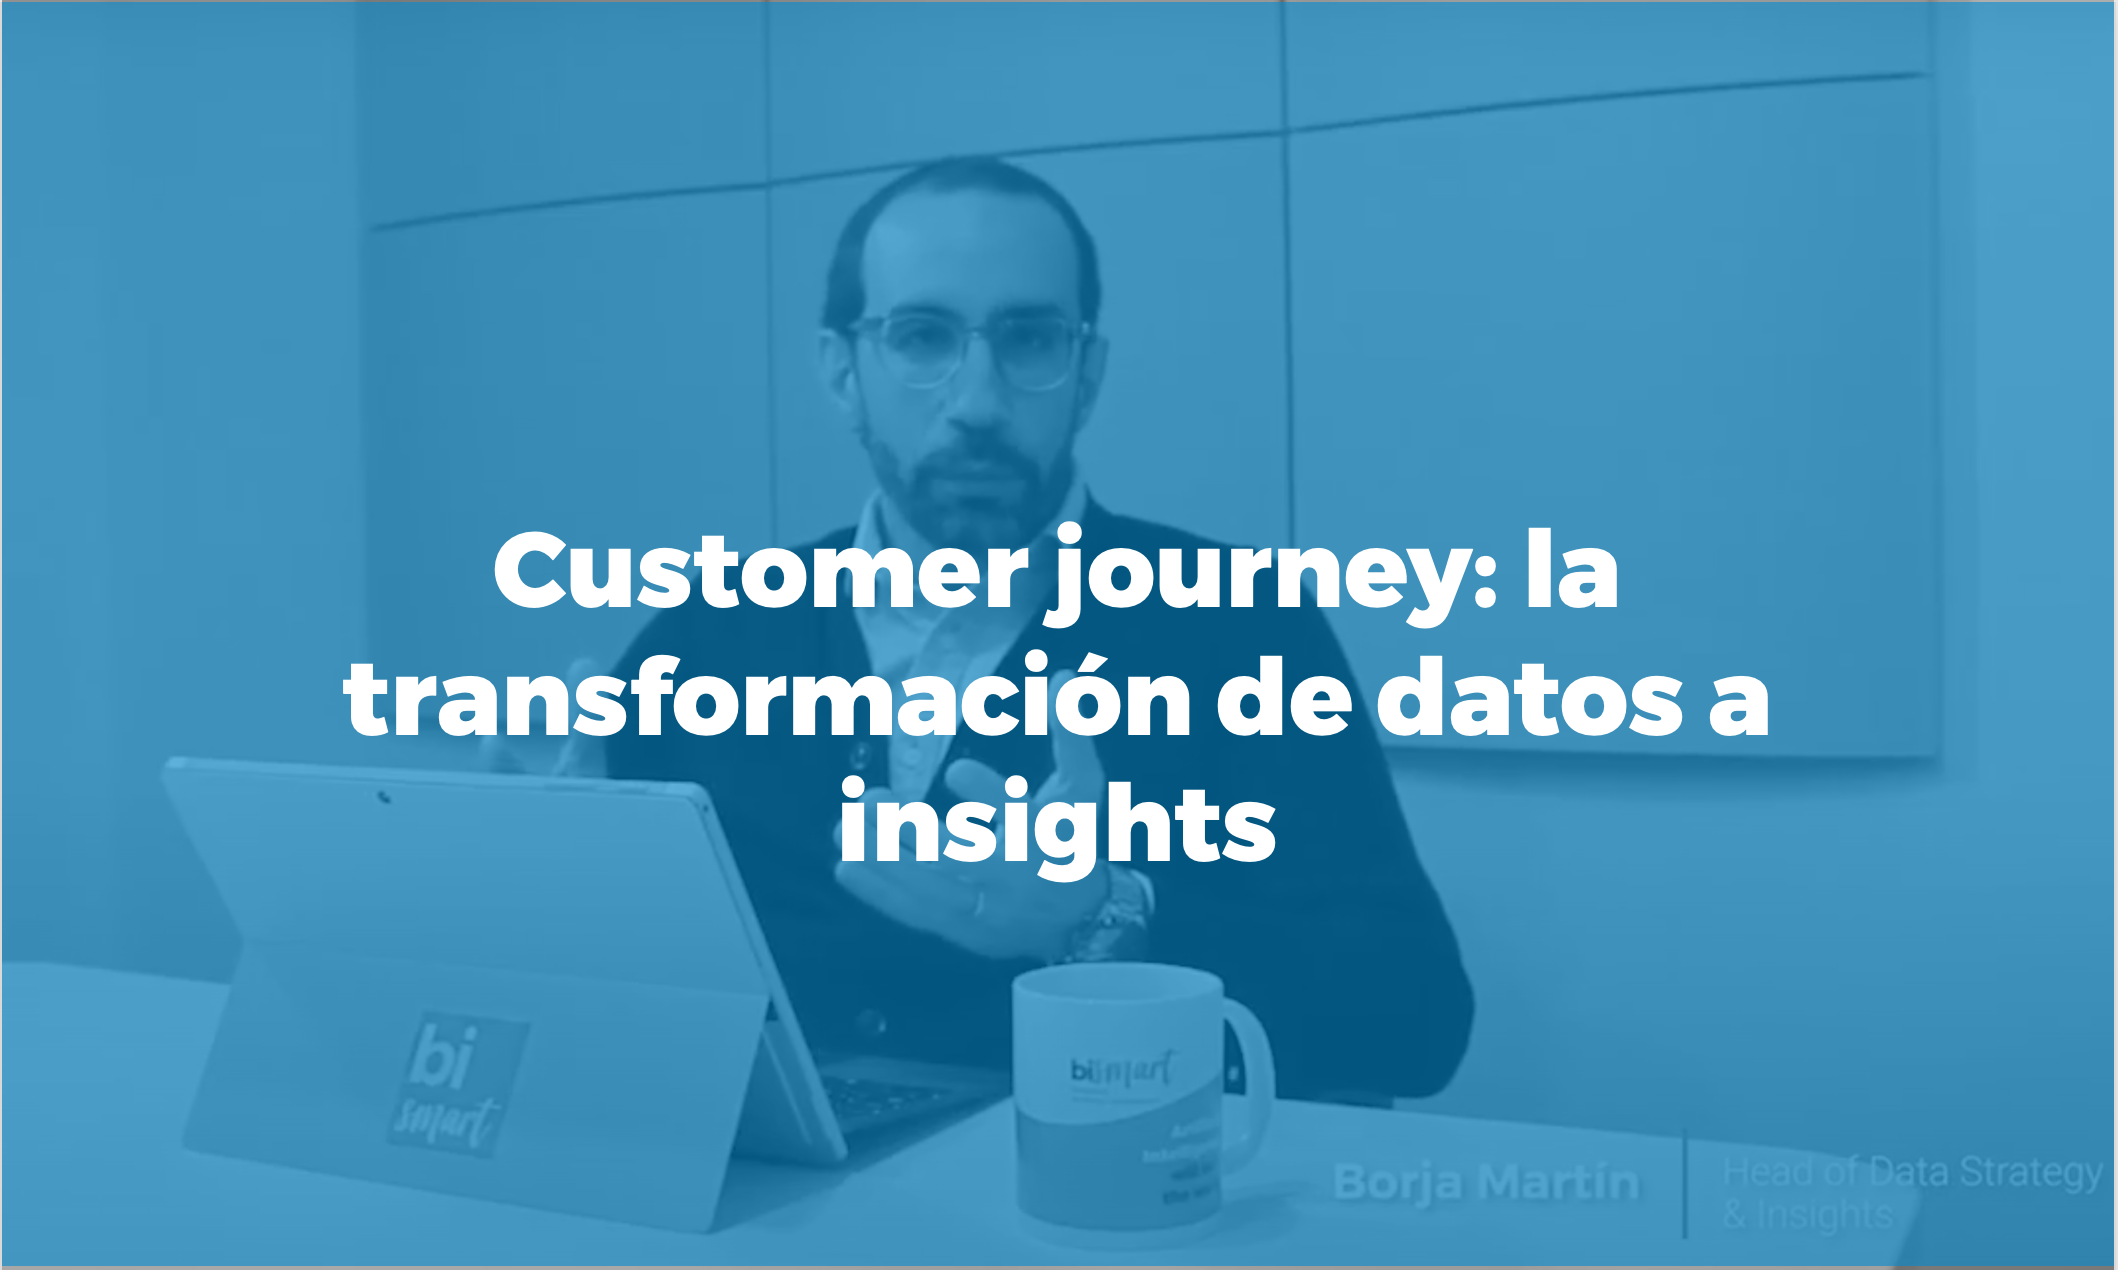 Bismart customer journey la transformación de datos a insights